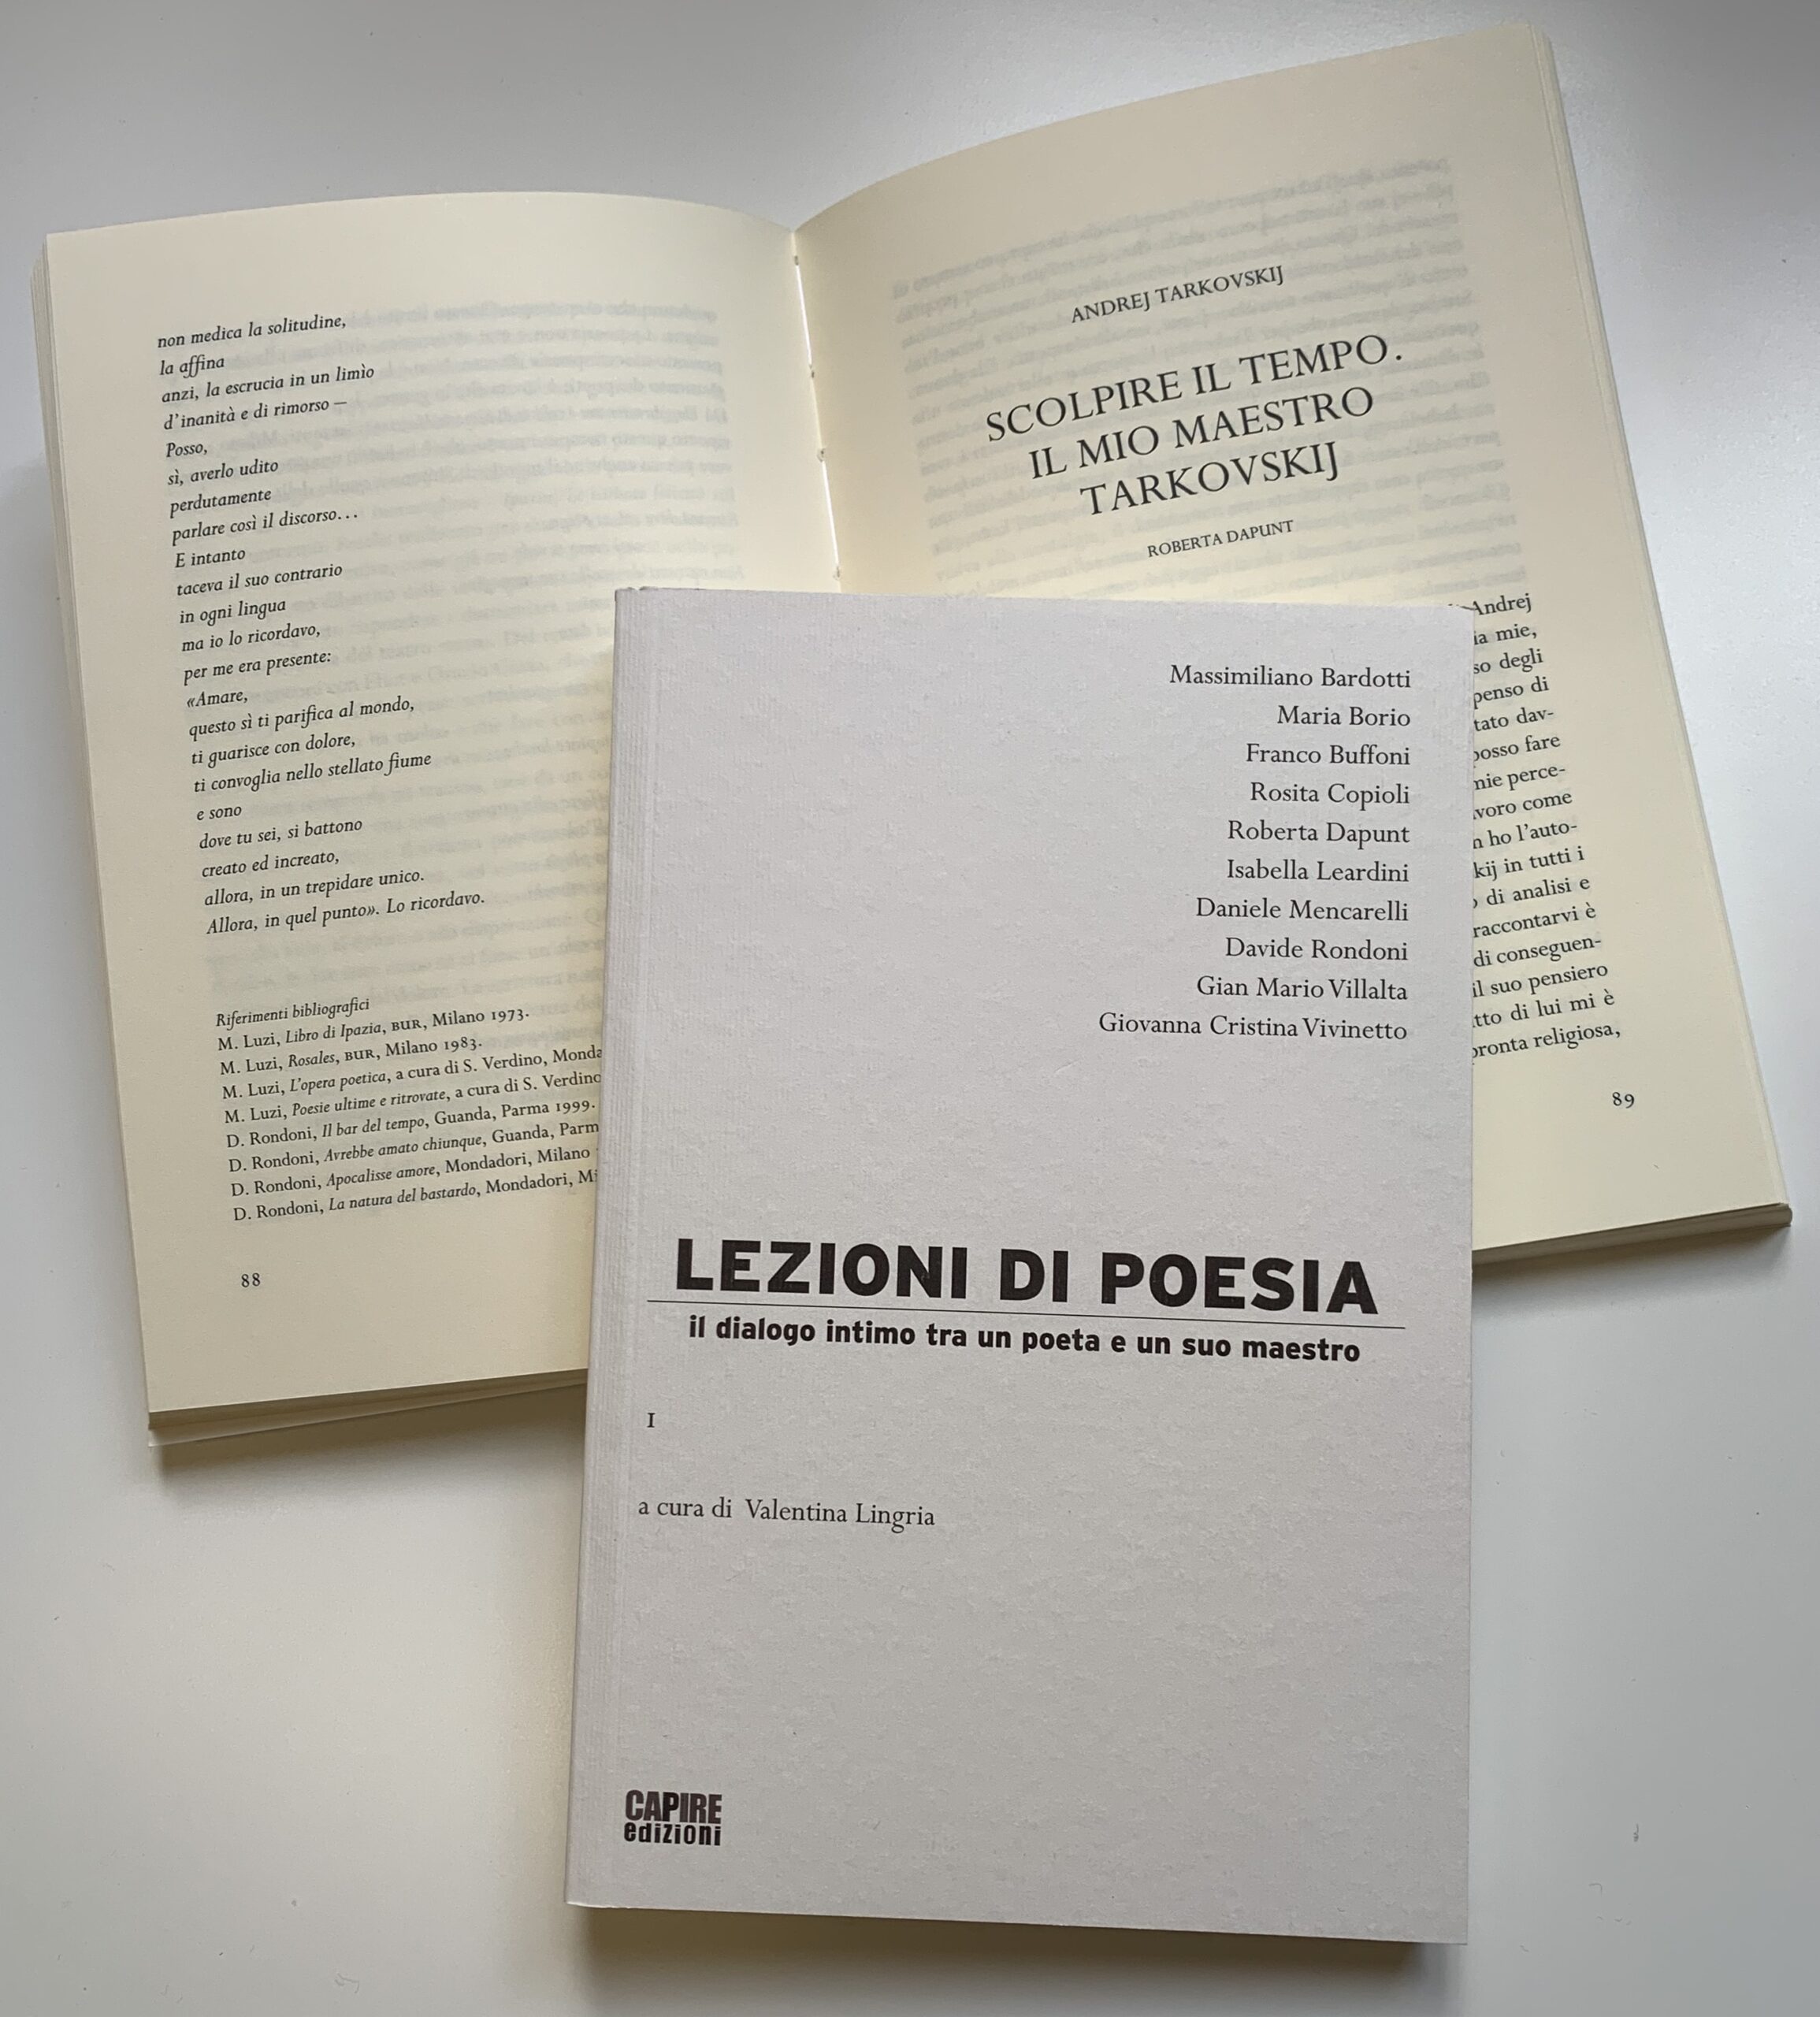 Il libro "Lezioni di poesia" La Scuola di Editoria